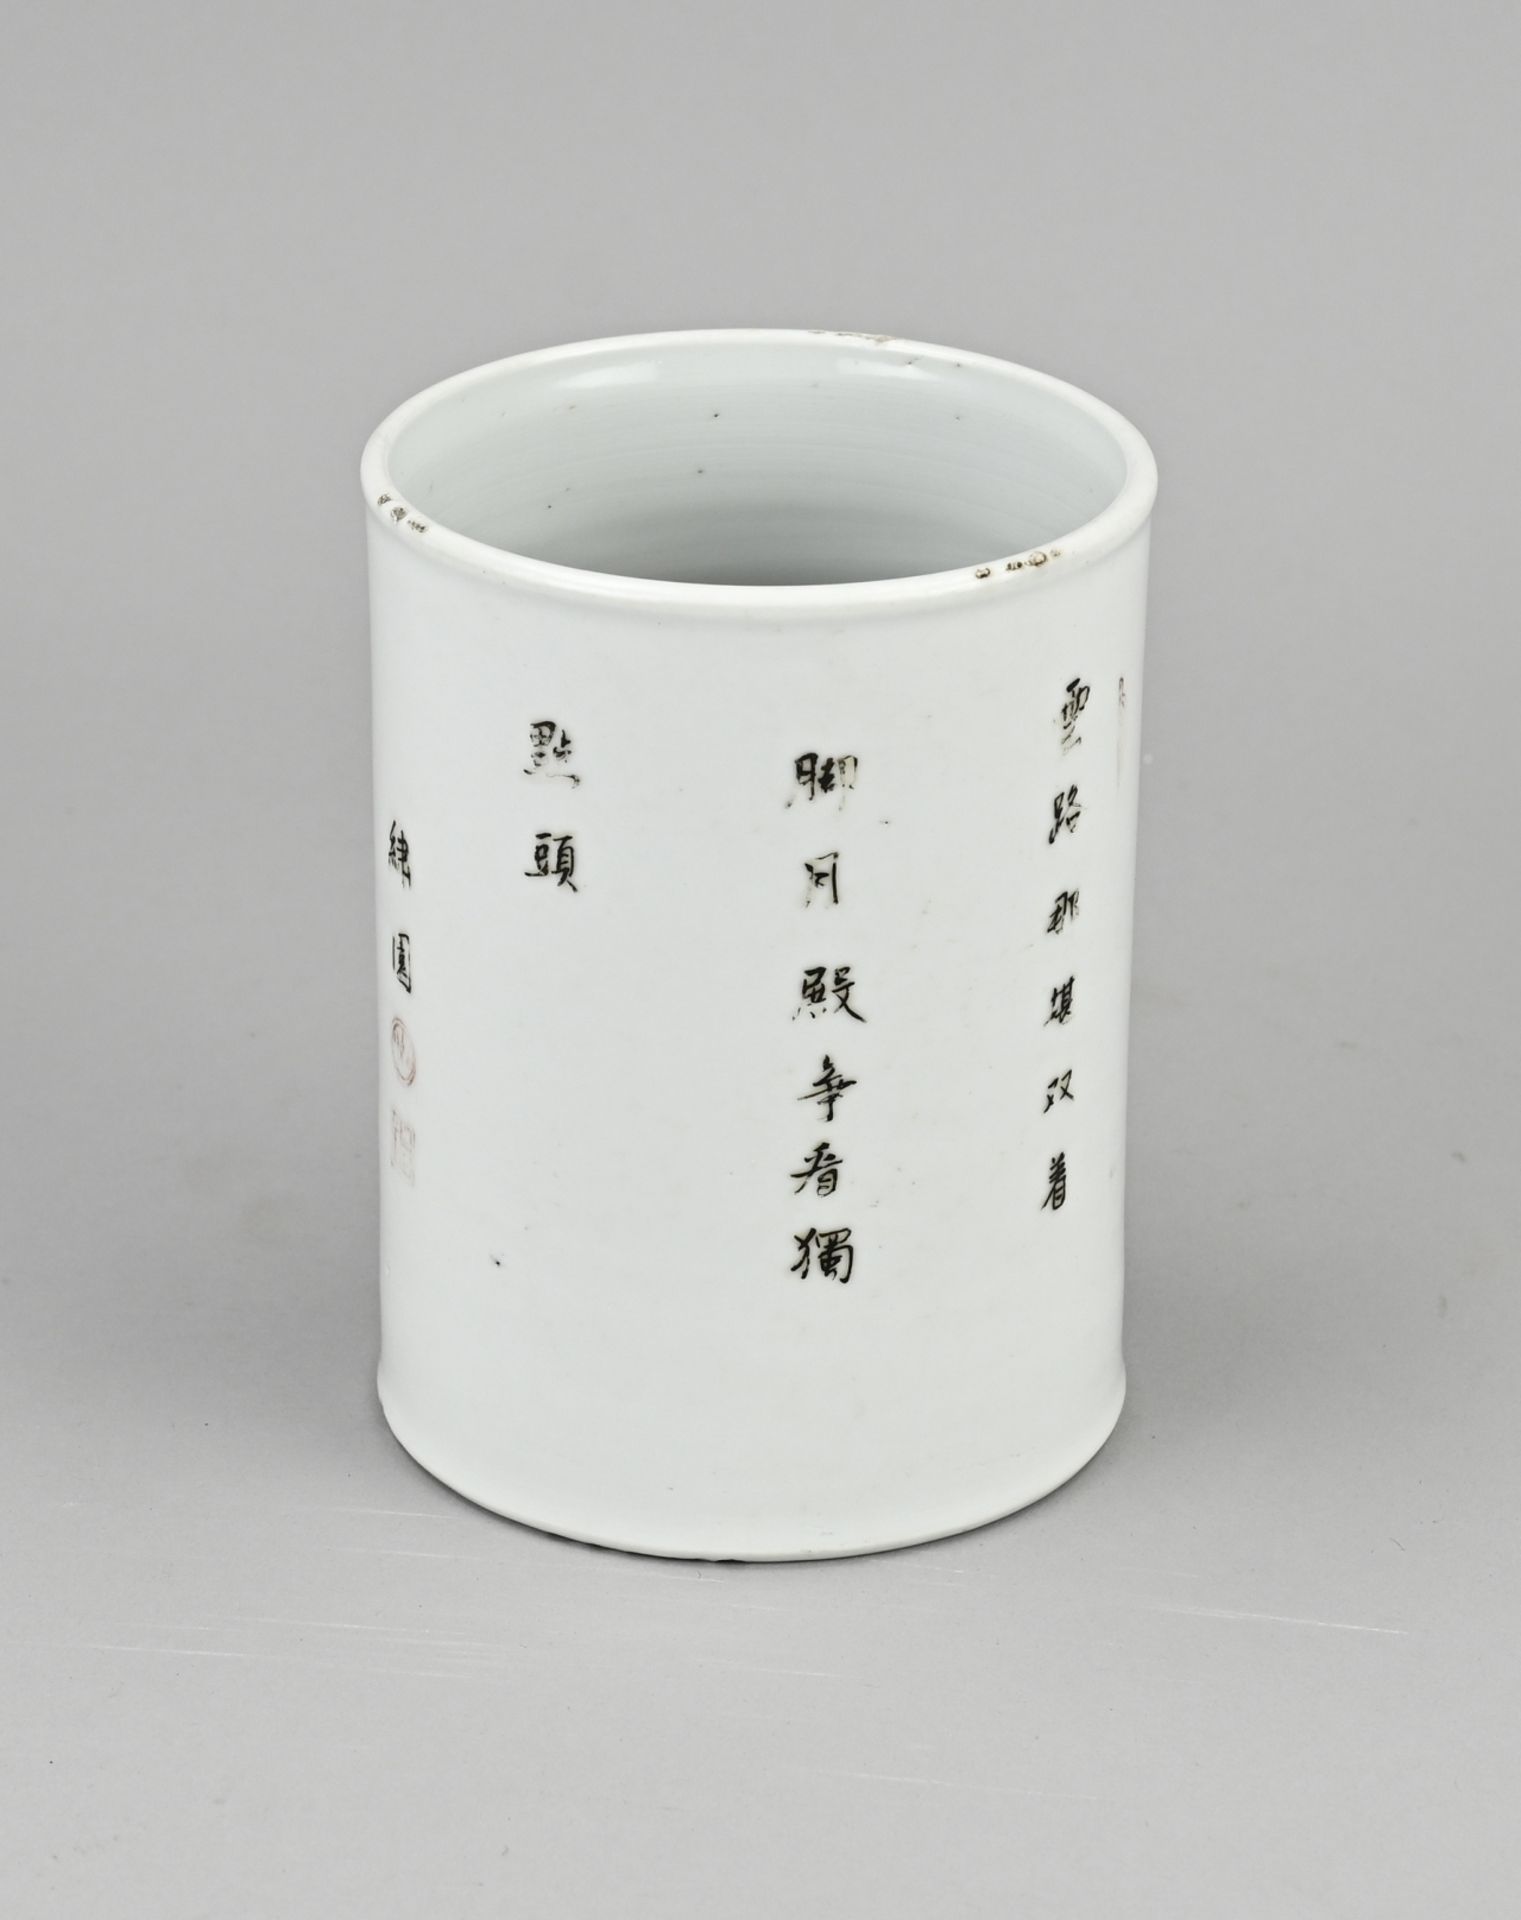 Chinese Family Verte brush pot, H 13.6 cm. - Image 2 of 3